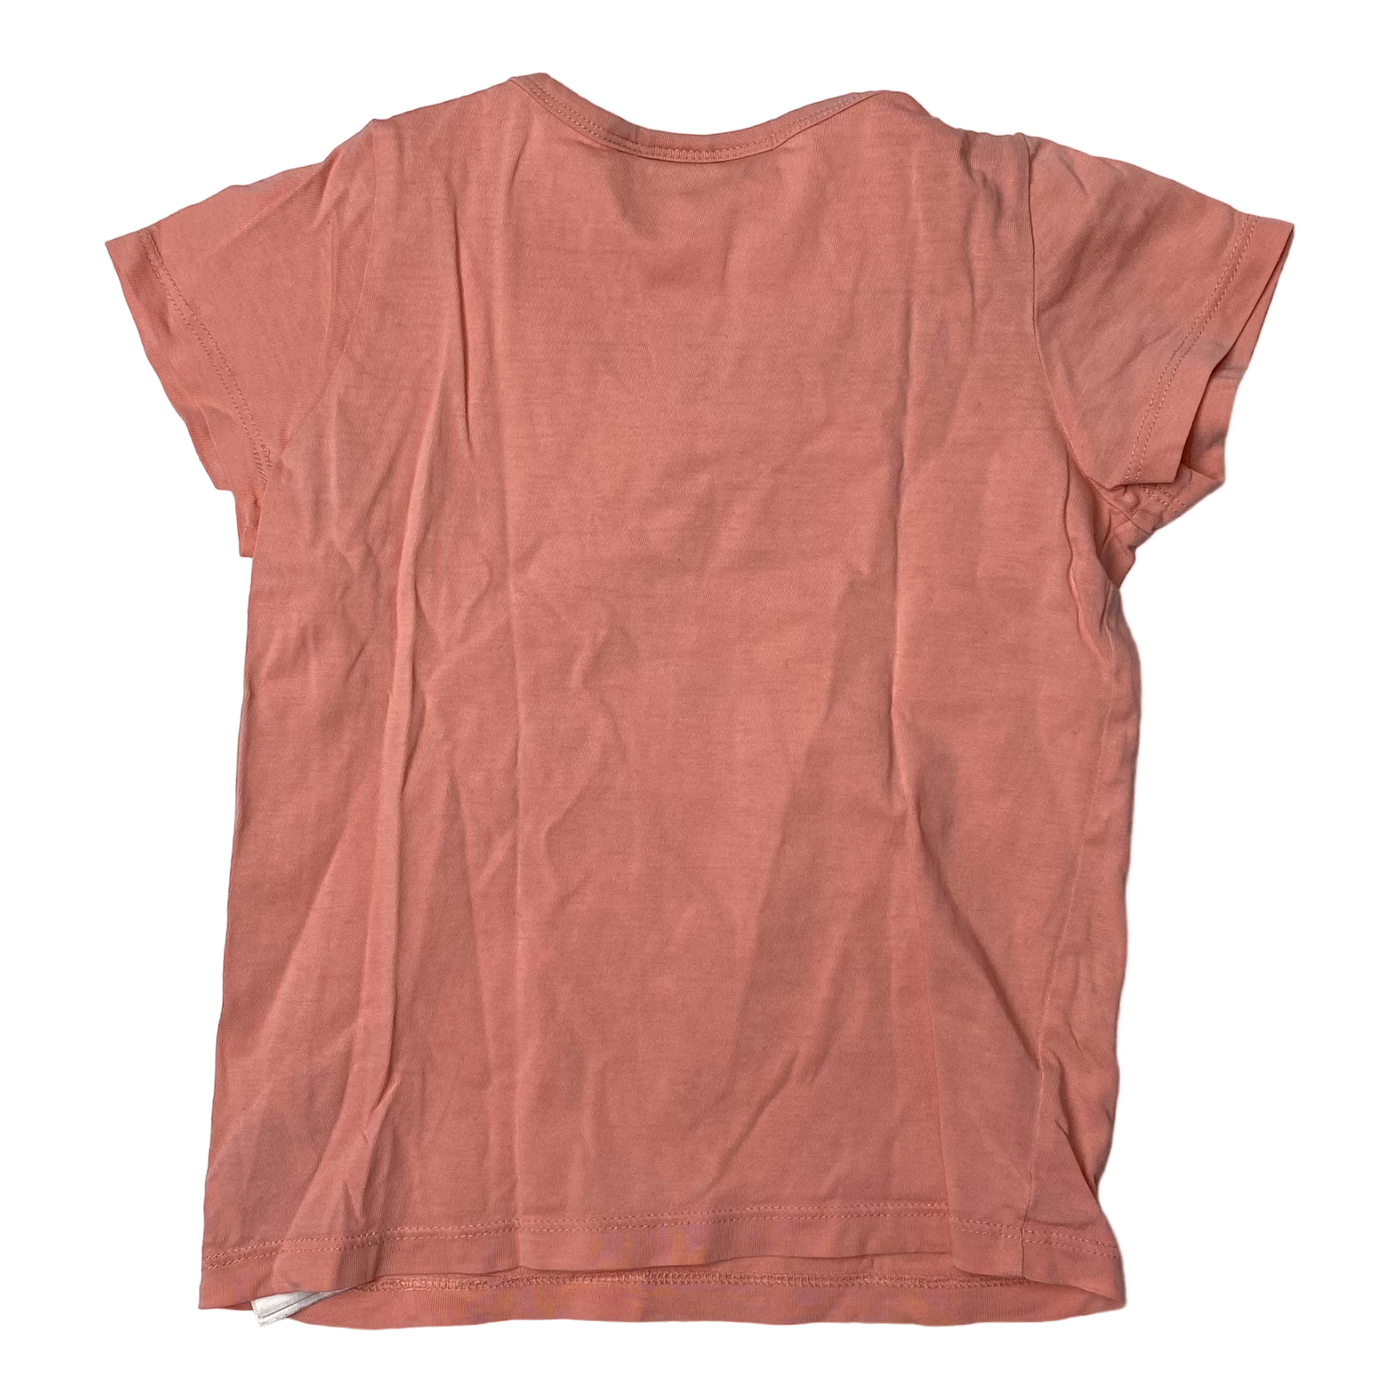 Mini Rodini t-shirt, salmon pink | 92/98cm